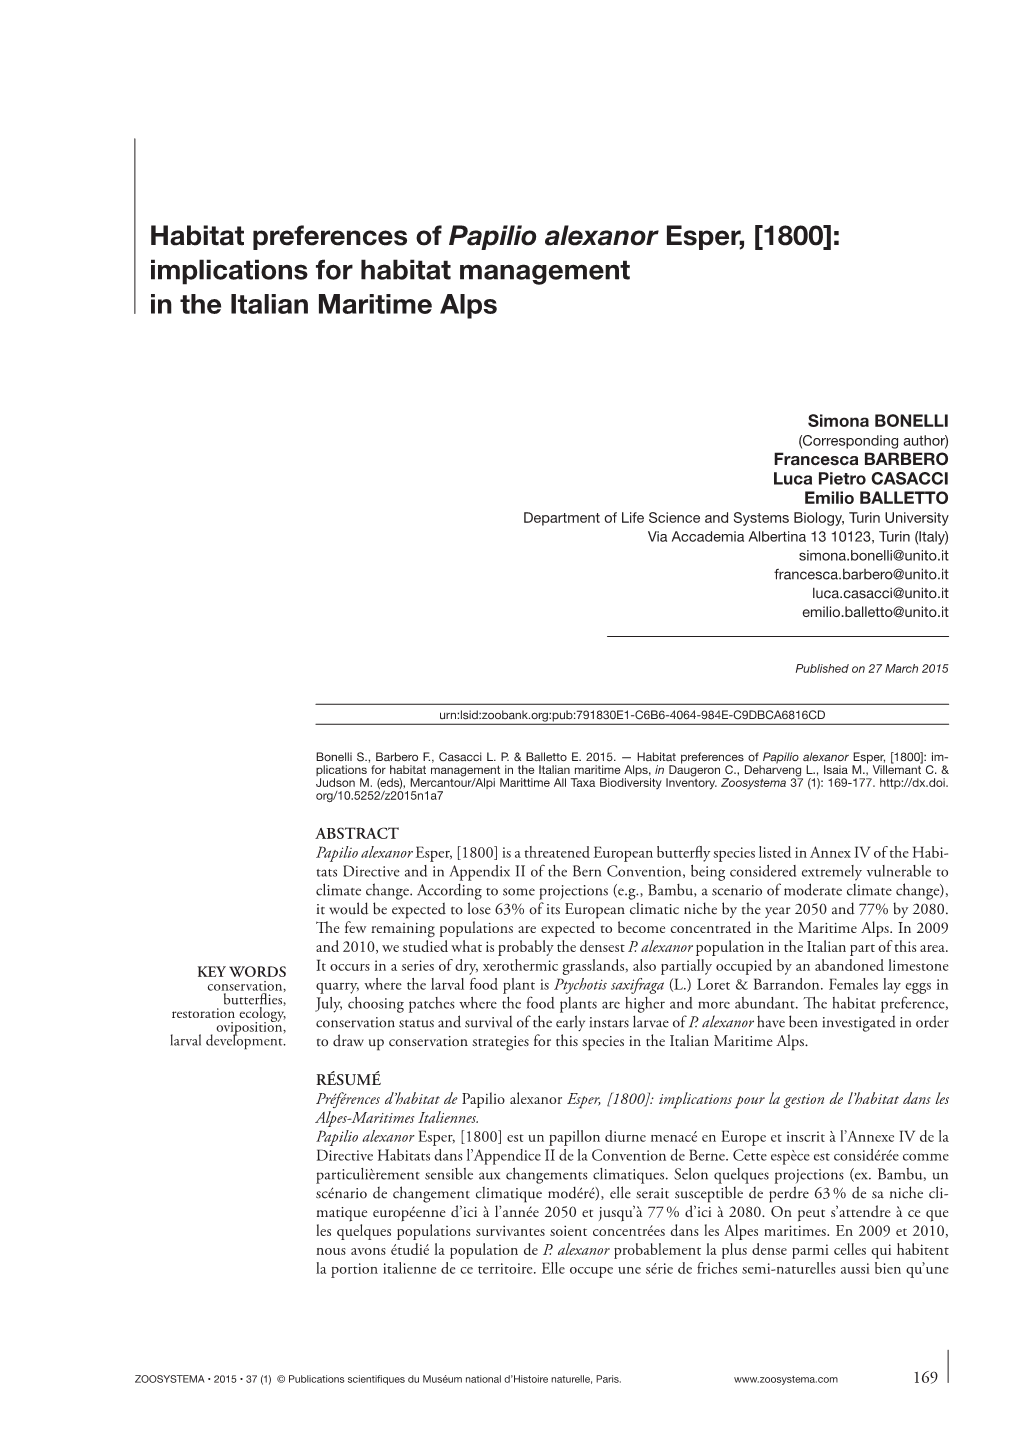 Habitat Preferences of Papilio Alexanor Esper, [1800]: Implications for Habitat Management in the Italian Maritime Alps